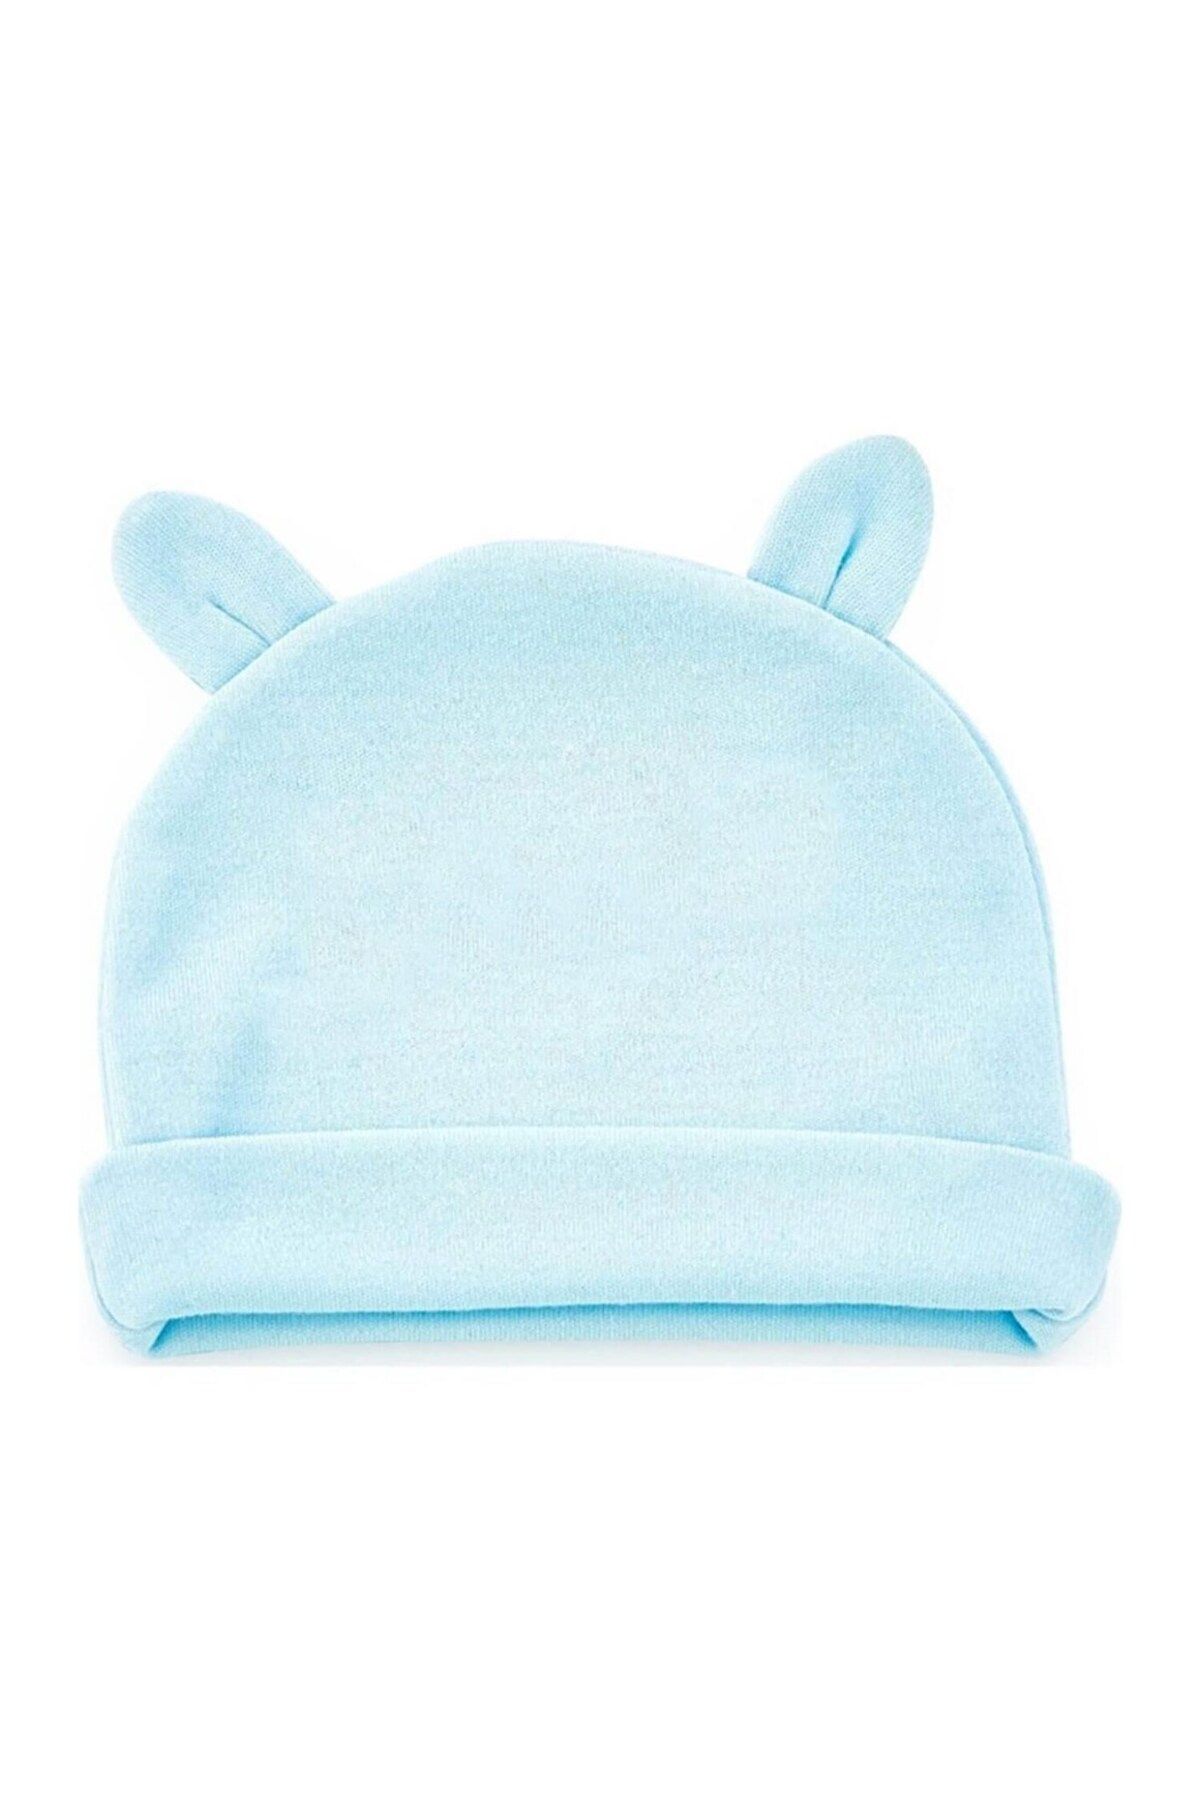 Babyjem Yenidoğan Bebe Şapka Kulaklı 585 Mavi